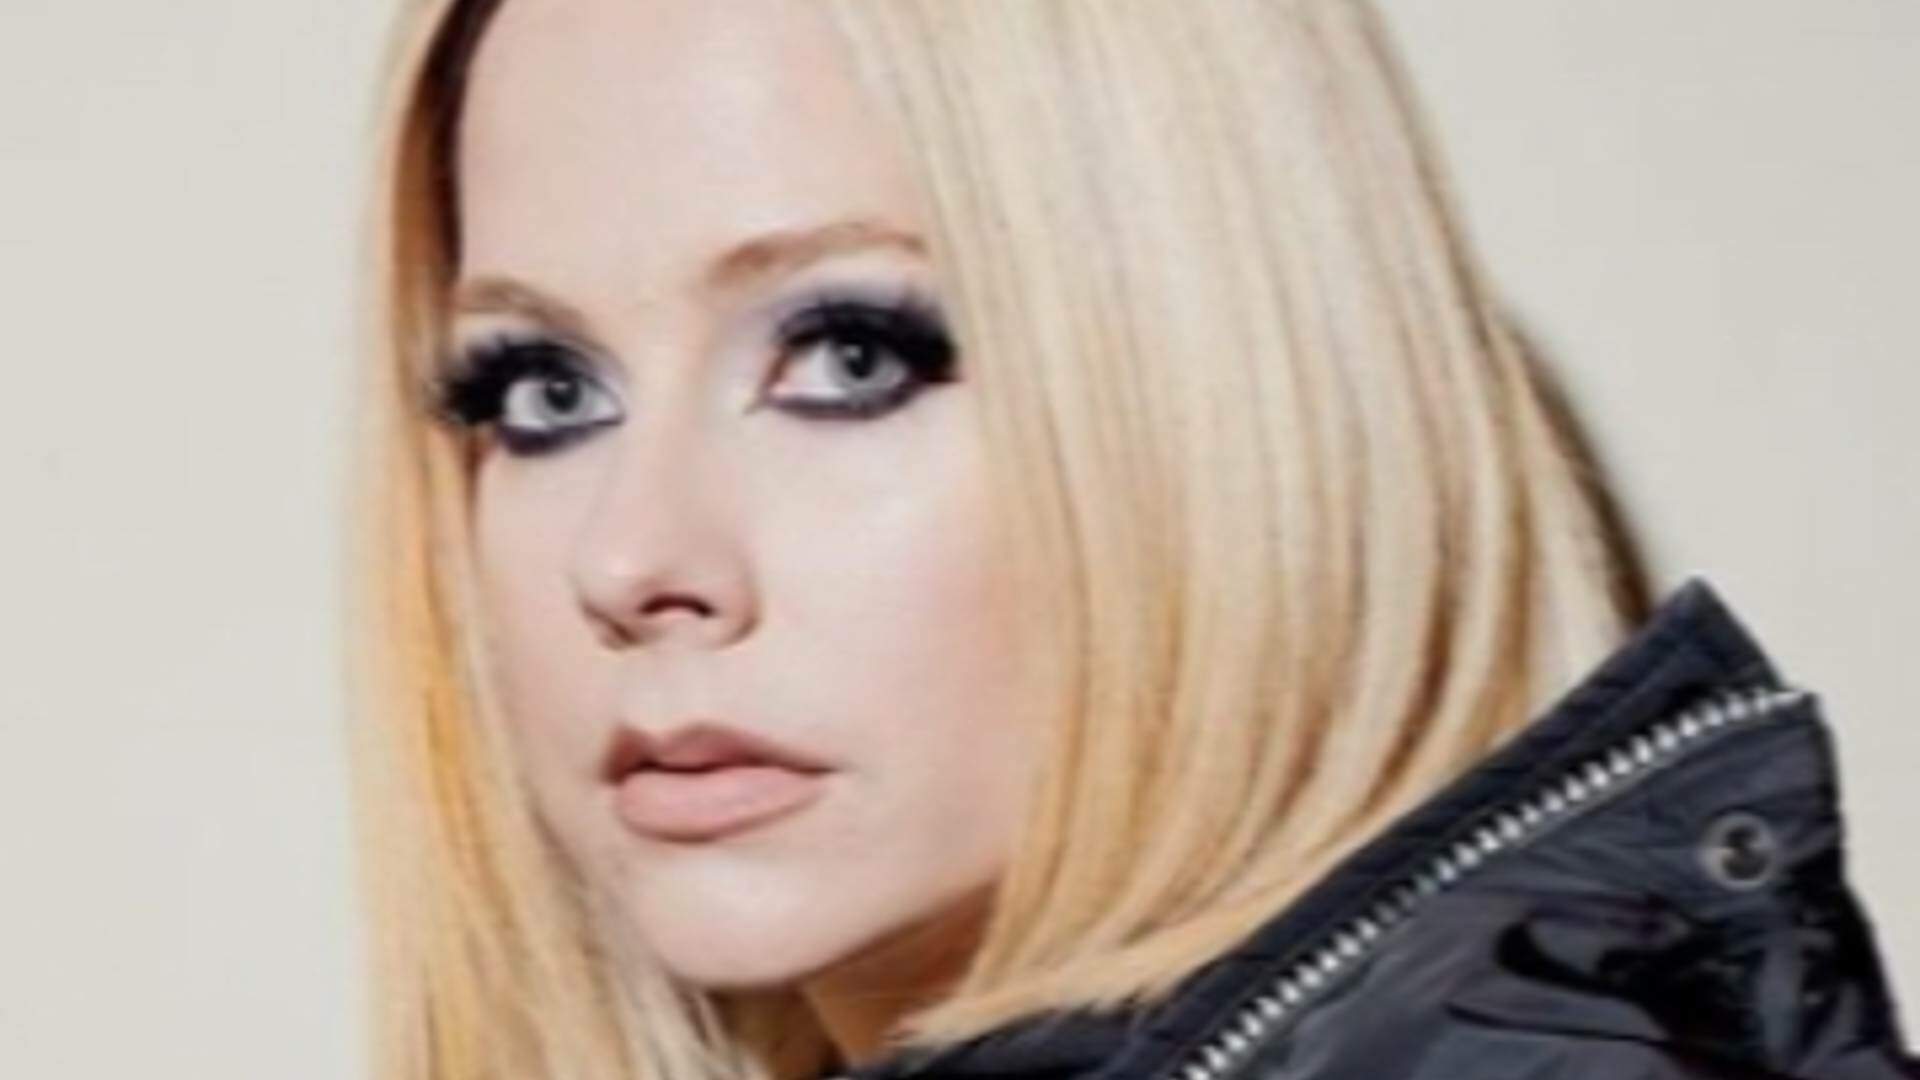 Romance relâmpago: Avril Lavigne termina namoro polêmico com rapper e verdade surpreendente por trás do fim vem à luz! - Metropolitana FM